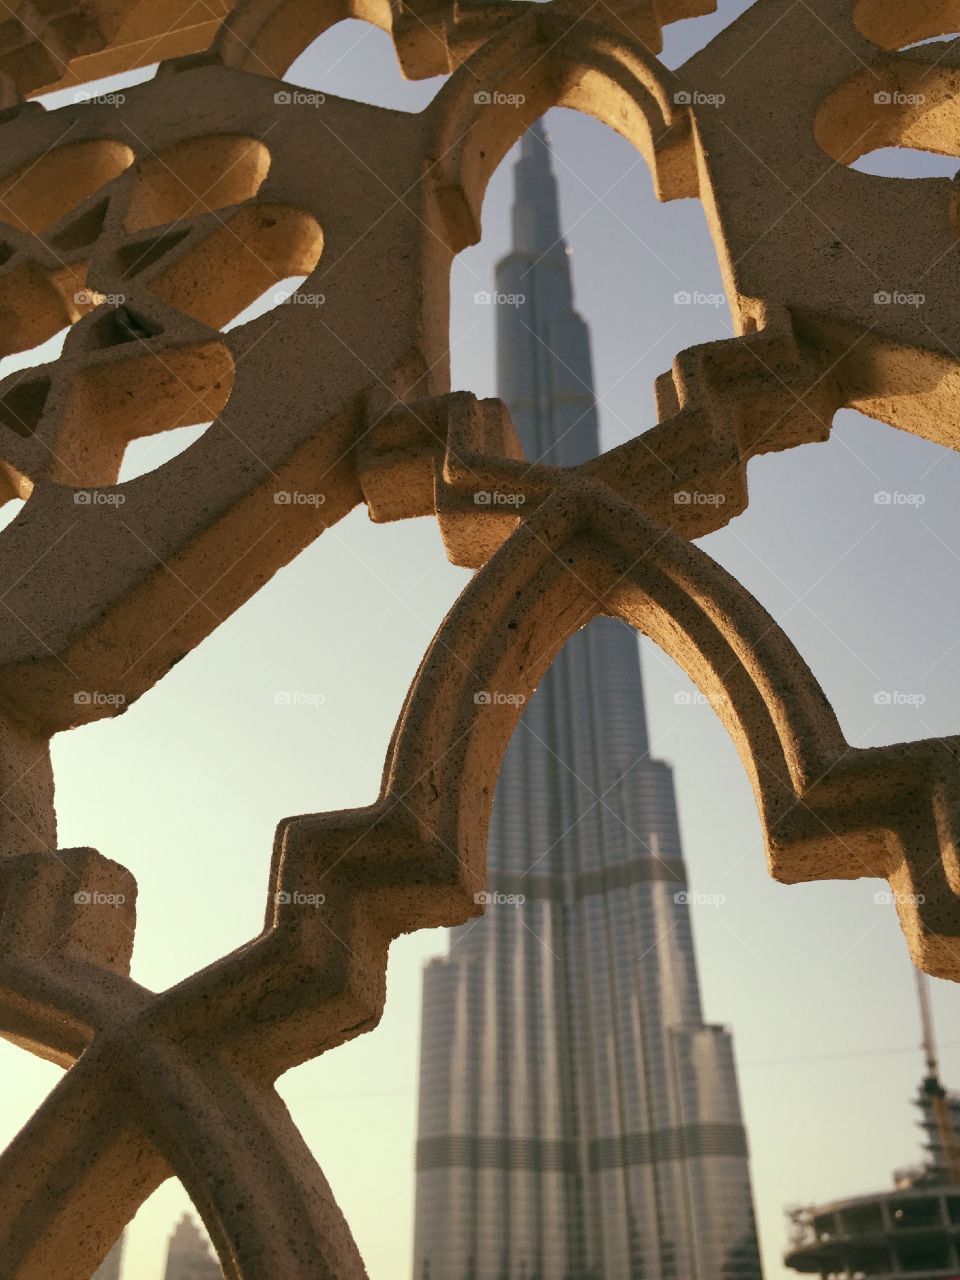 Dubai tower